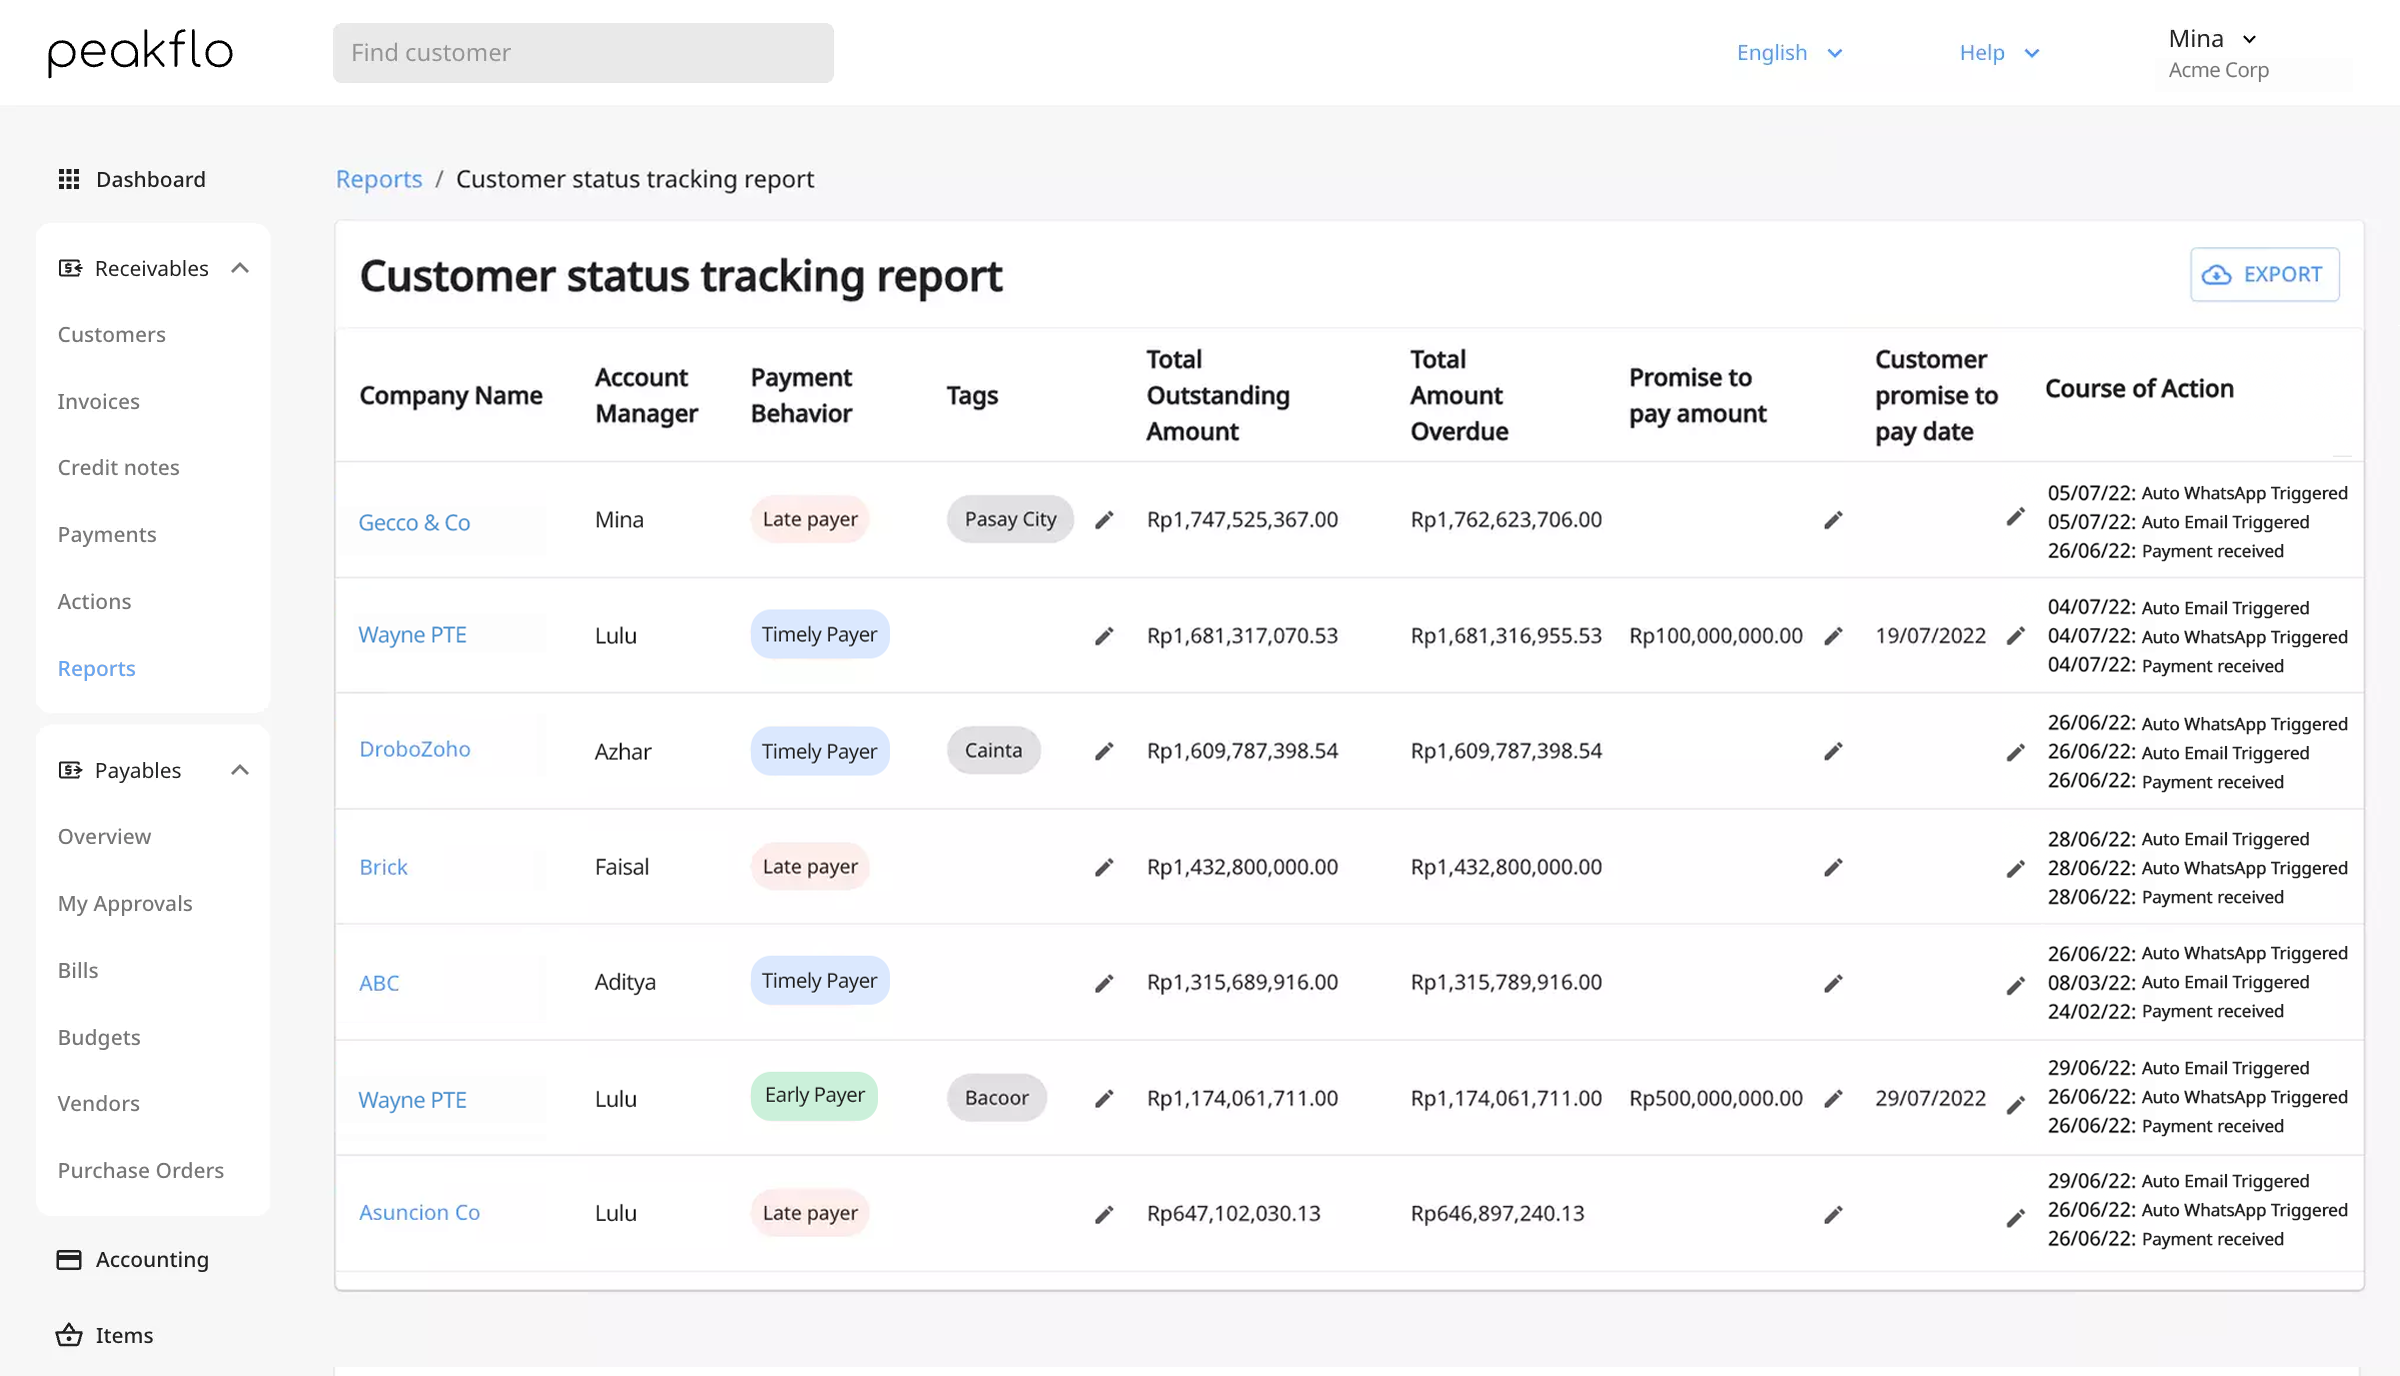 Customer Status Tracking Report